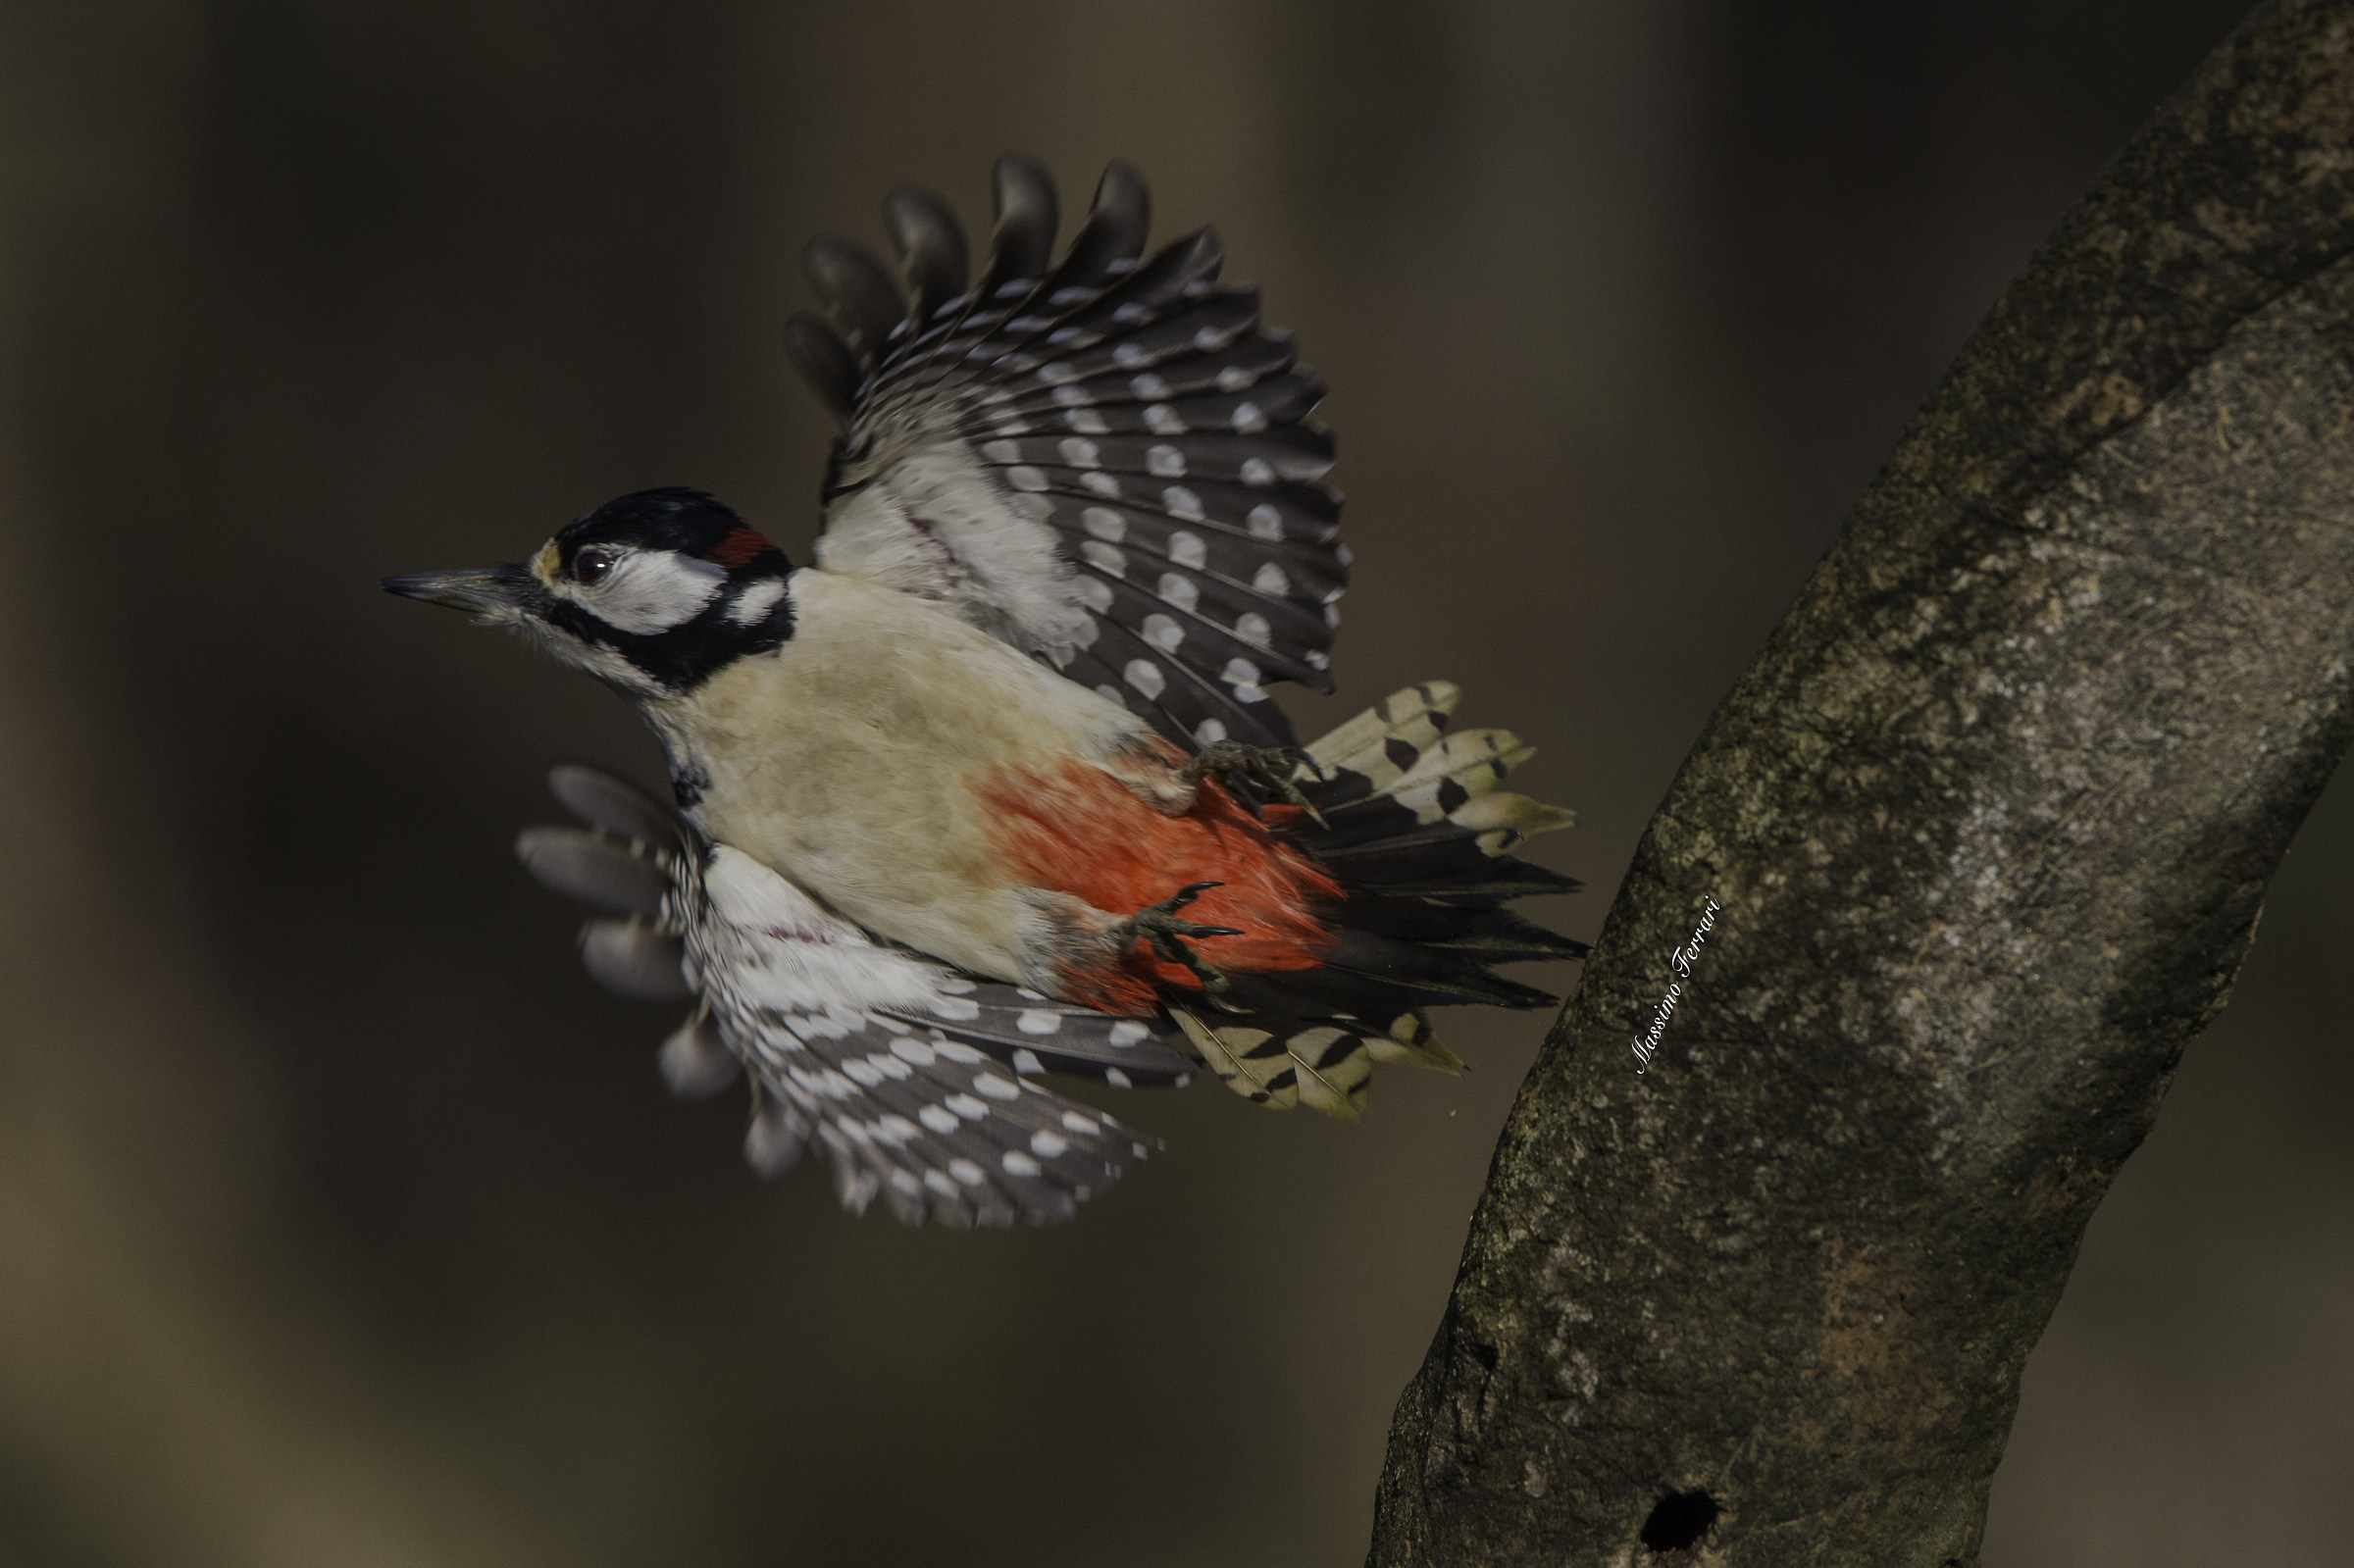 Woodpecker taking flight...